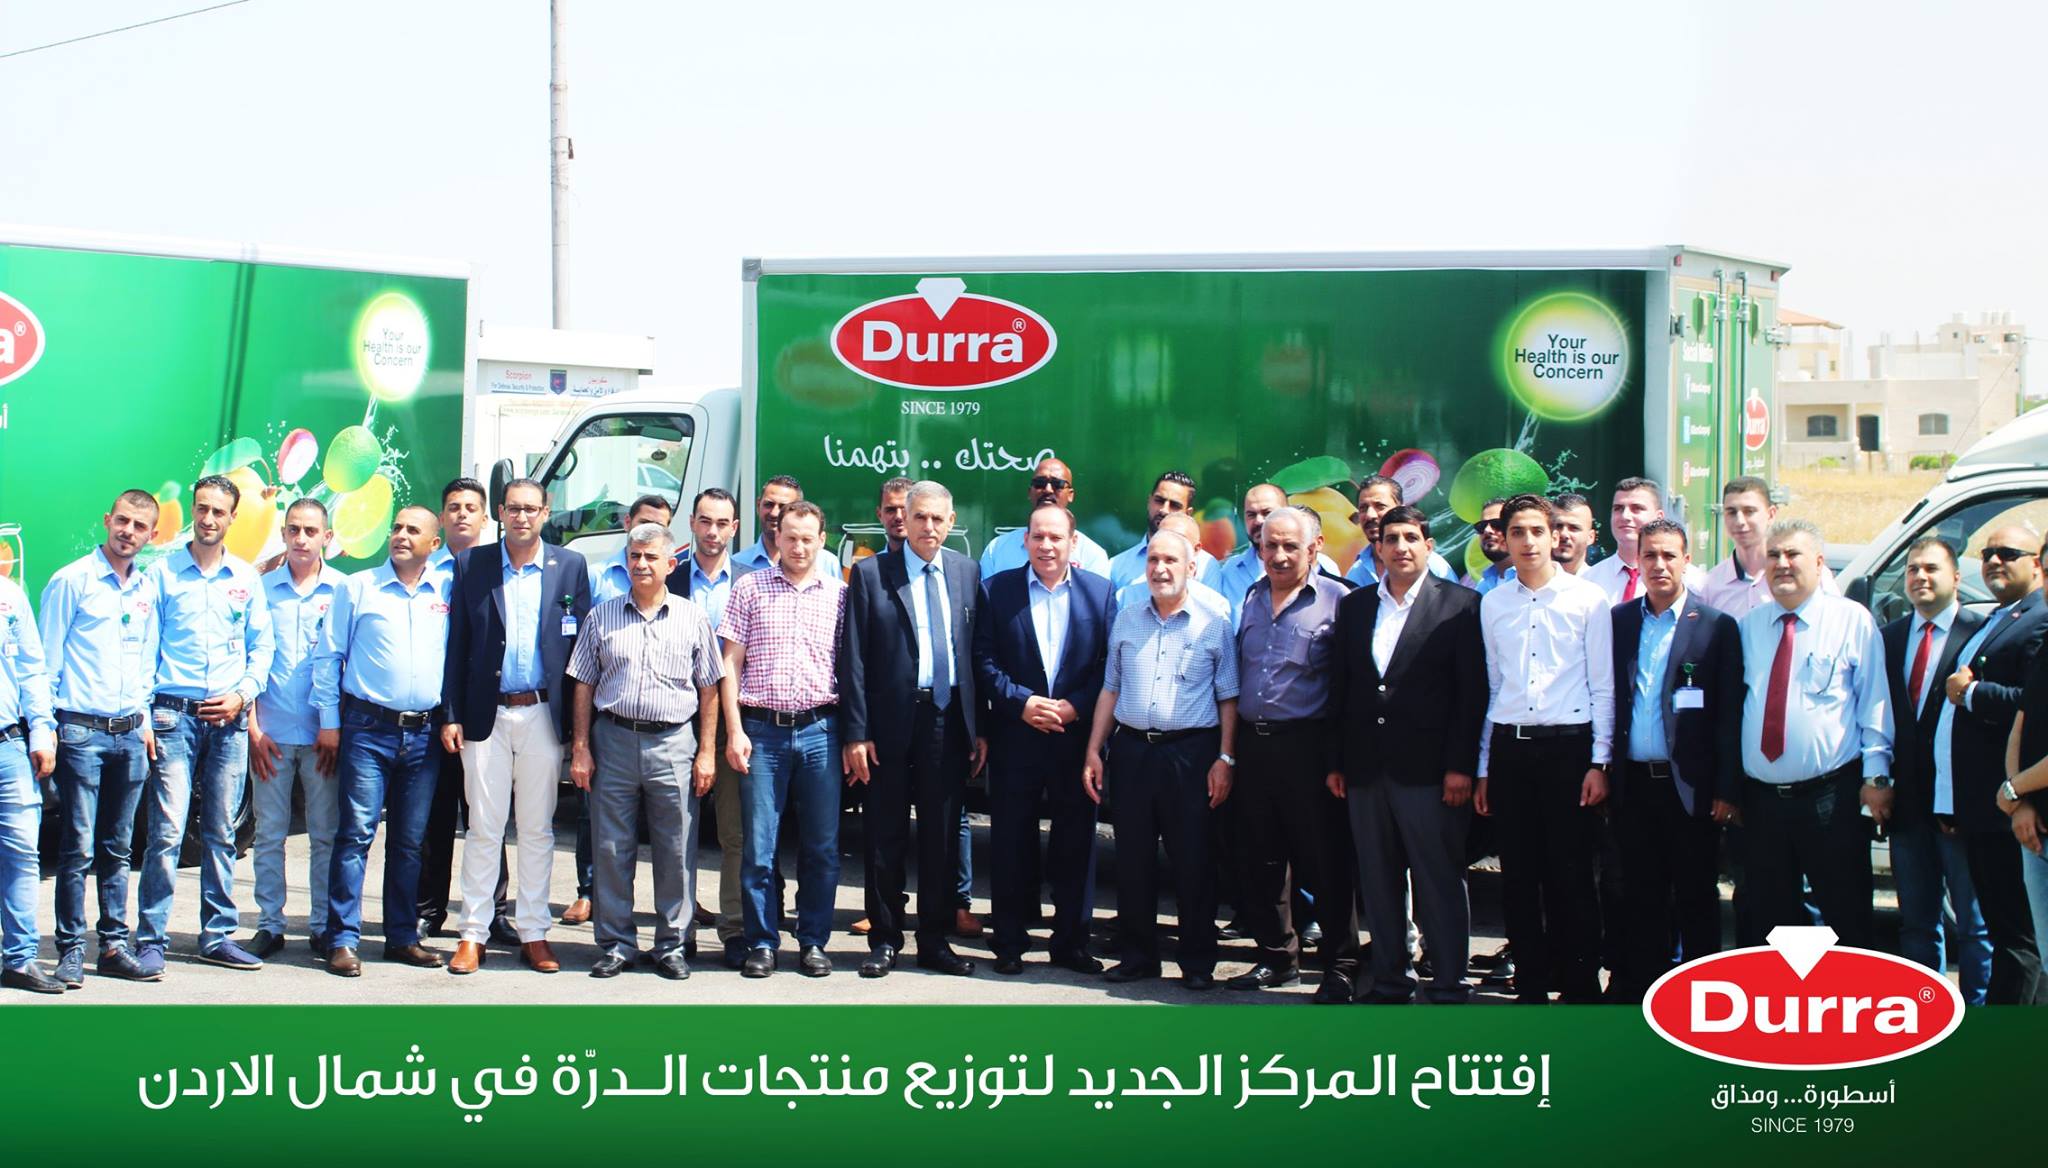 افتتاح المركز الجديد لتوزيع منتجات الـدرّة في شمال الأردن